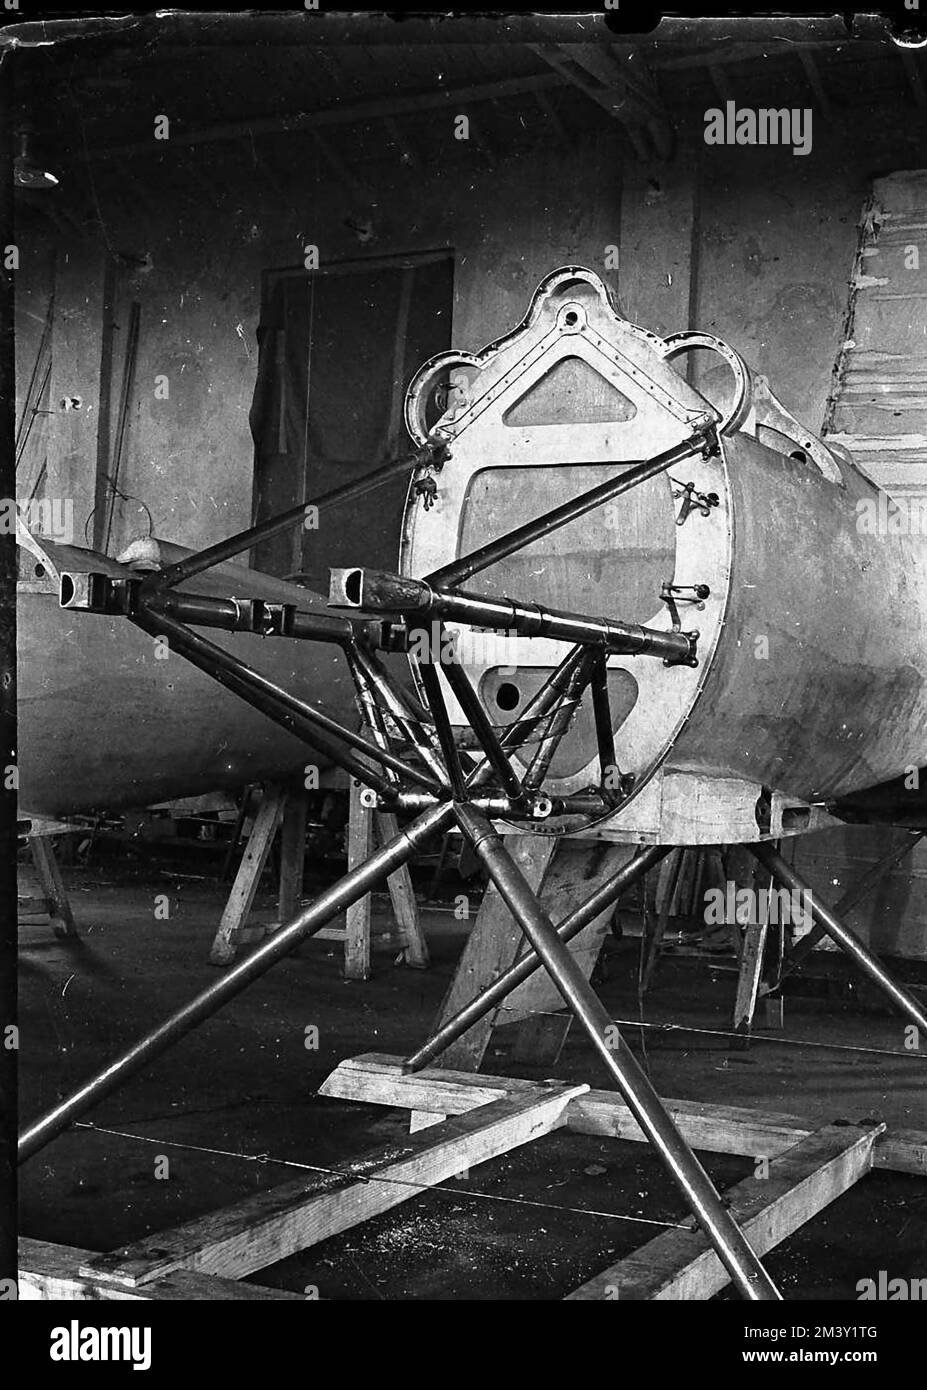 Aeroplani - Macchi M52R del Reparto Alta Velocità 1928 (3) Stock Photo